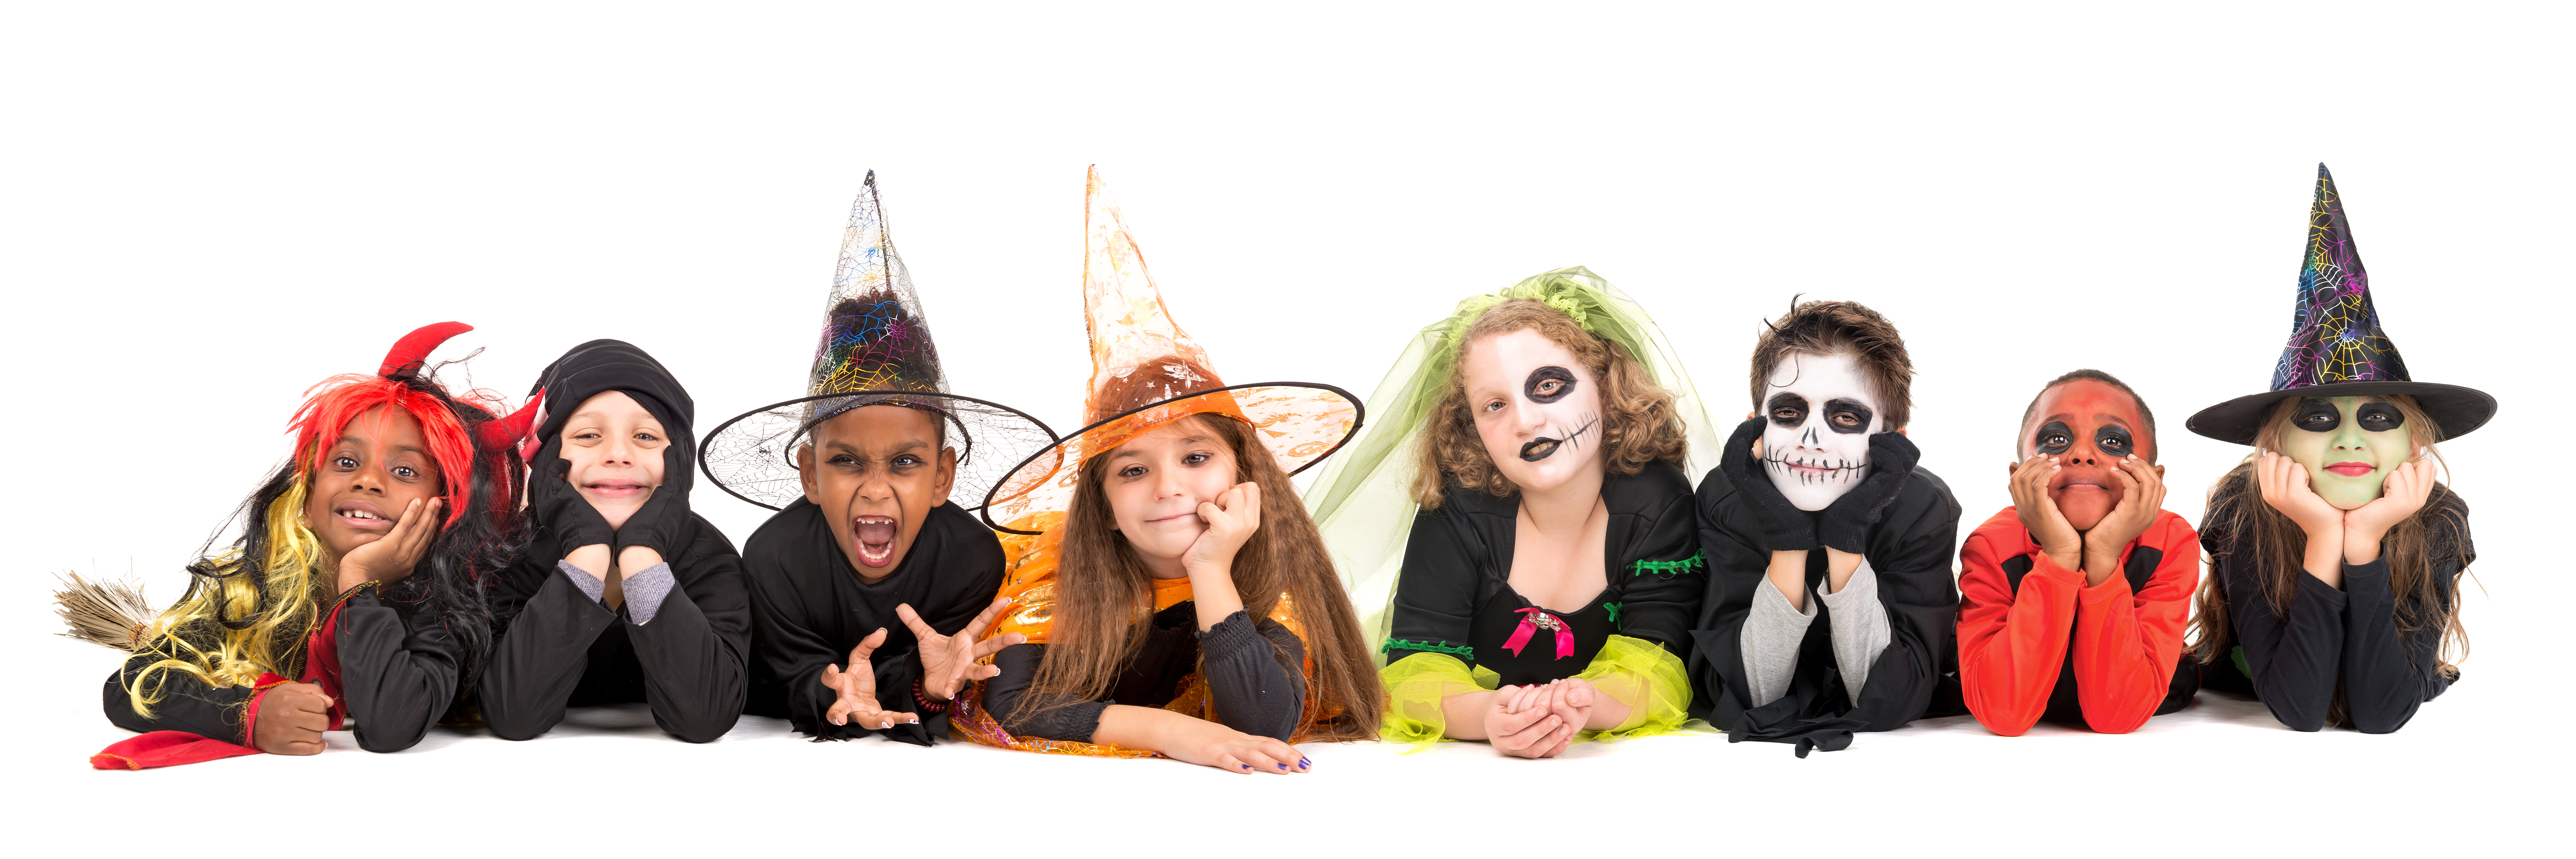 Site lijn Super goed Profetie Halloween is een feest voor kinderen! – KiDDoWz: voor kinderen en hun  (groot)ouders